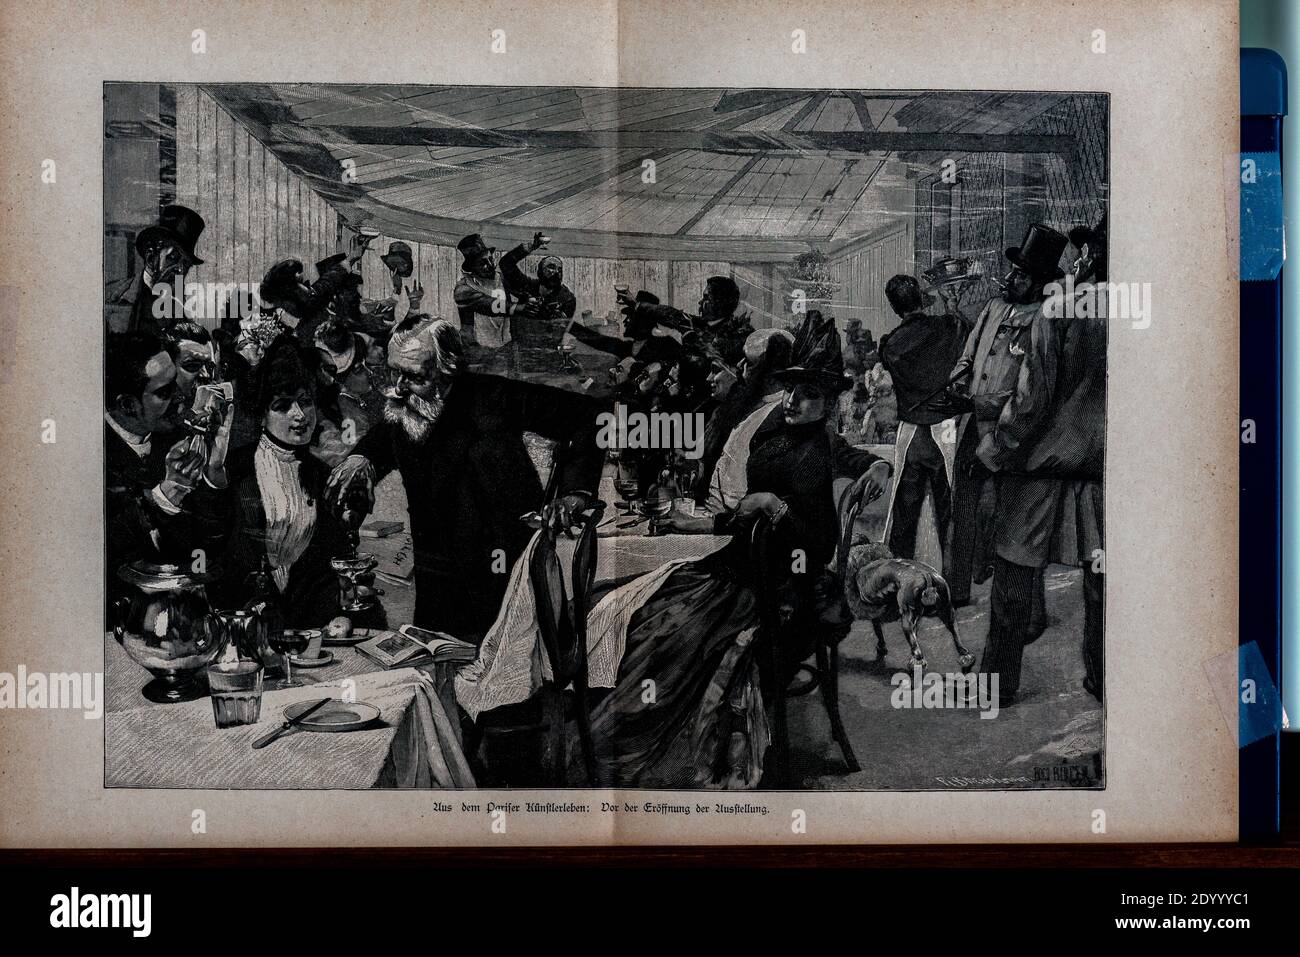 Titolo 'Aus dem Pariser Künstlerleben' una scena della vita bohémien parigina...', Ilustrazione da 'Die Haupstädte der Welt', Breslau circa 1897 Foto Stock